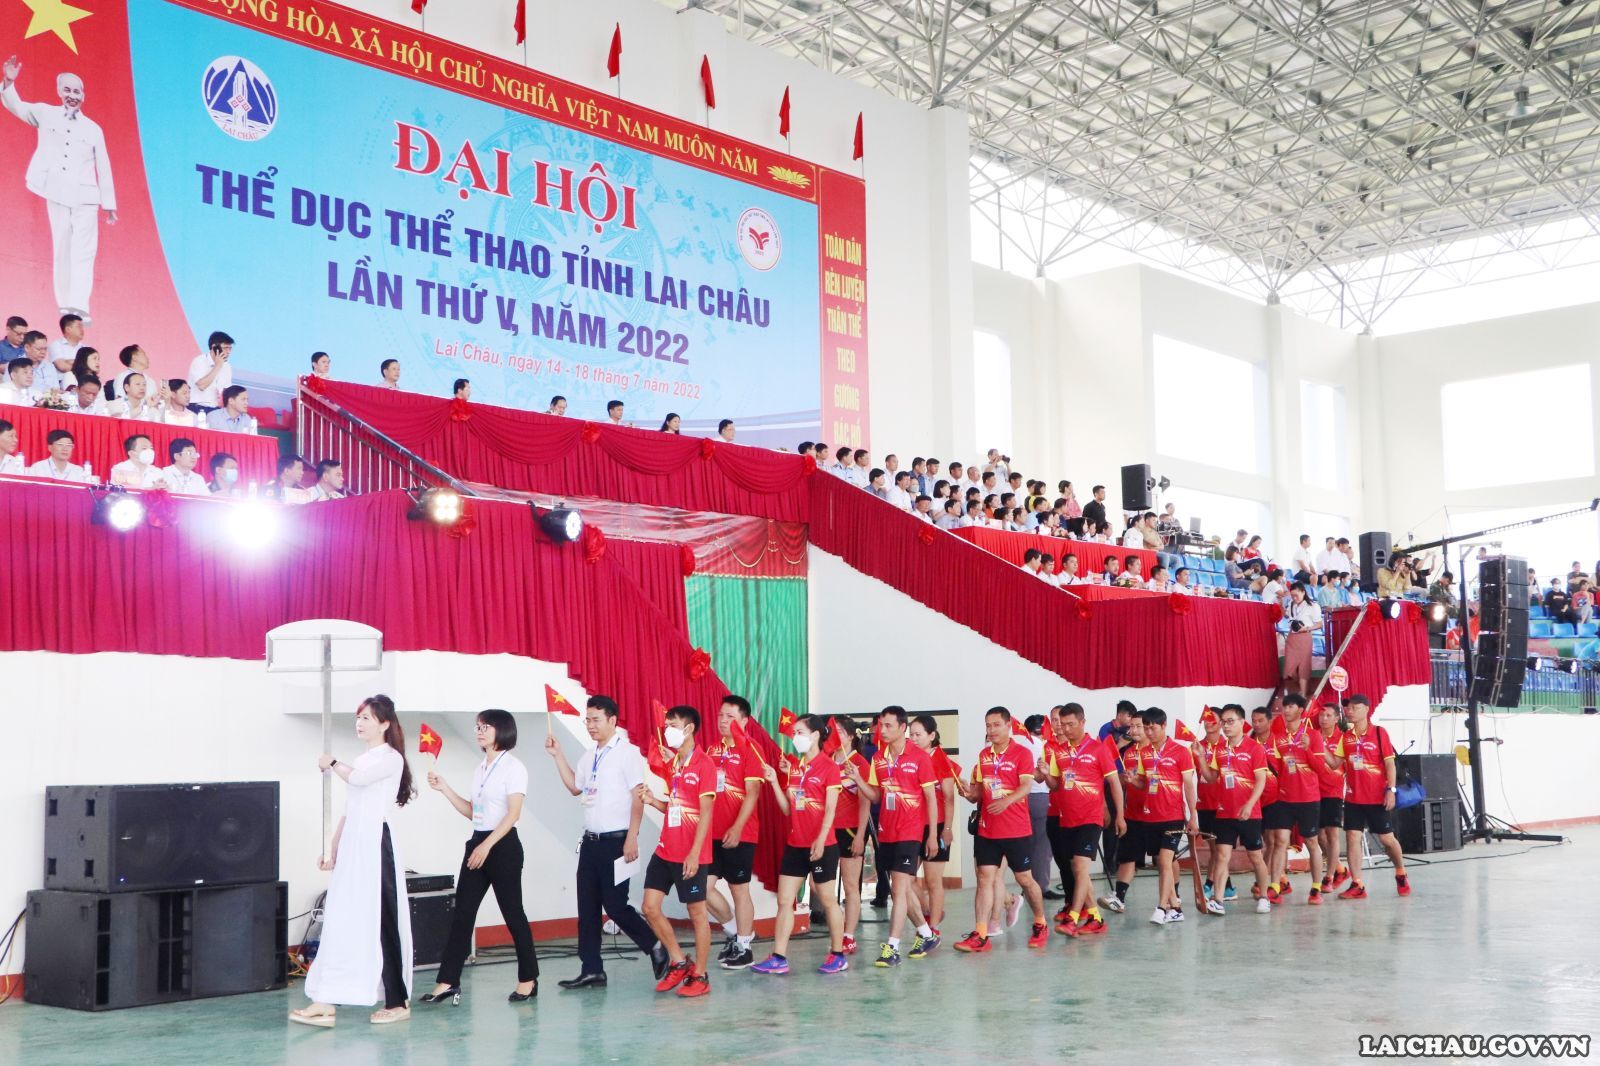 Lai Châu: Khai mạc Đại hội Thể dục thể thao lần thứ V, năm 2022 - Ảnh 6.